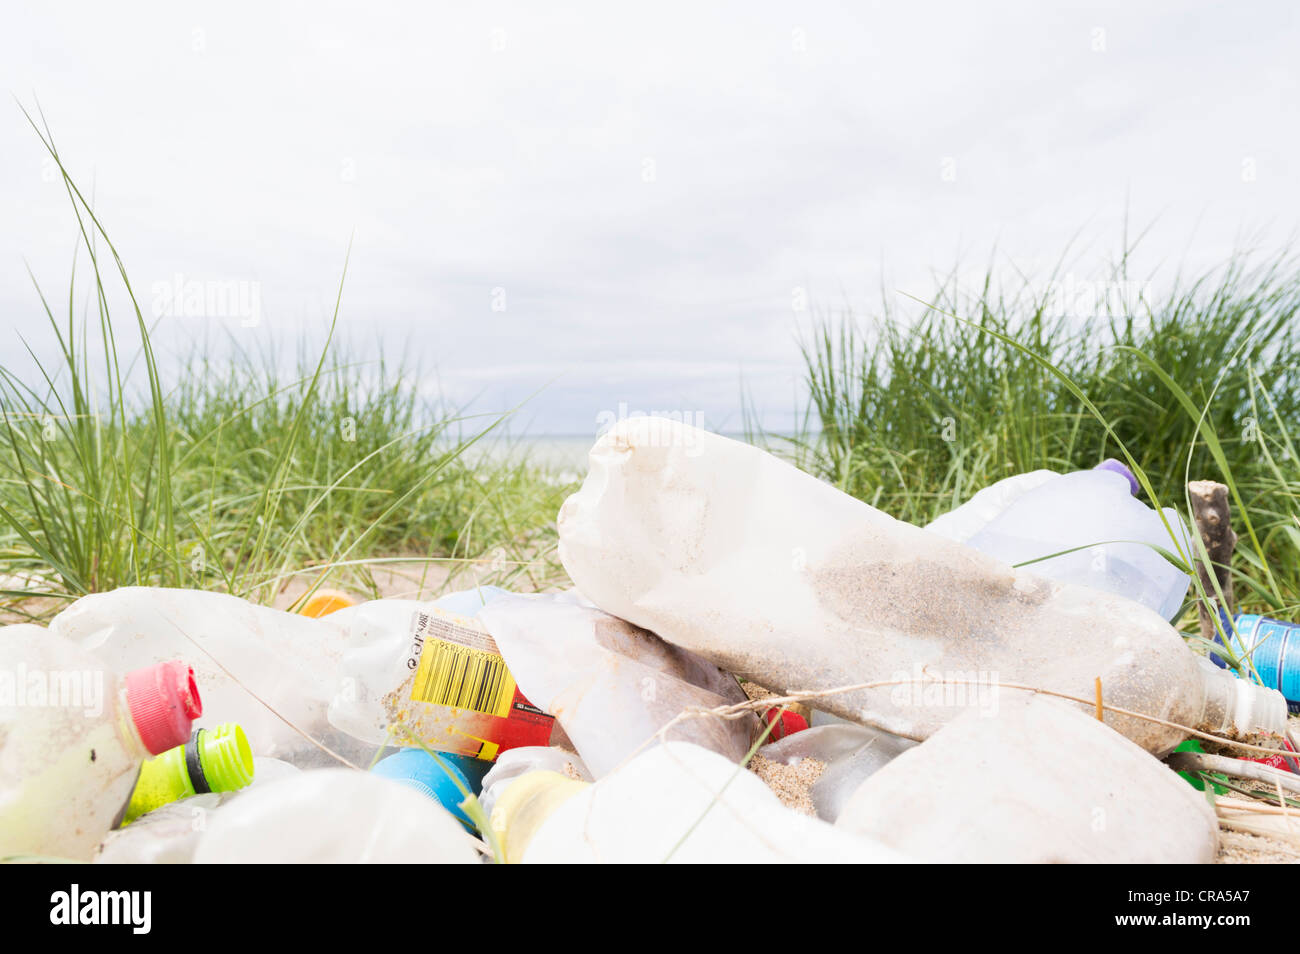 Les bouteilles en plastique et autres déchets rejetés par la marée sur une plage Banque D'Images